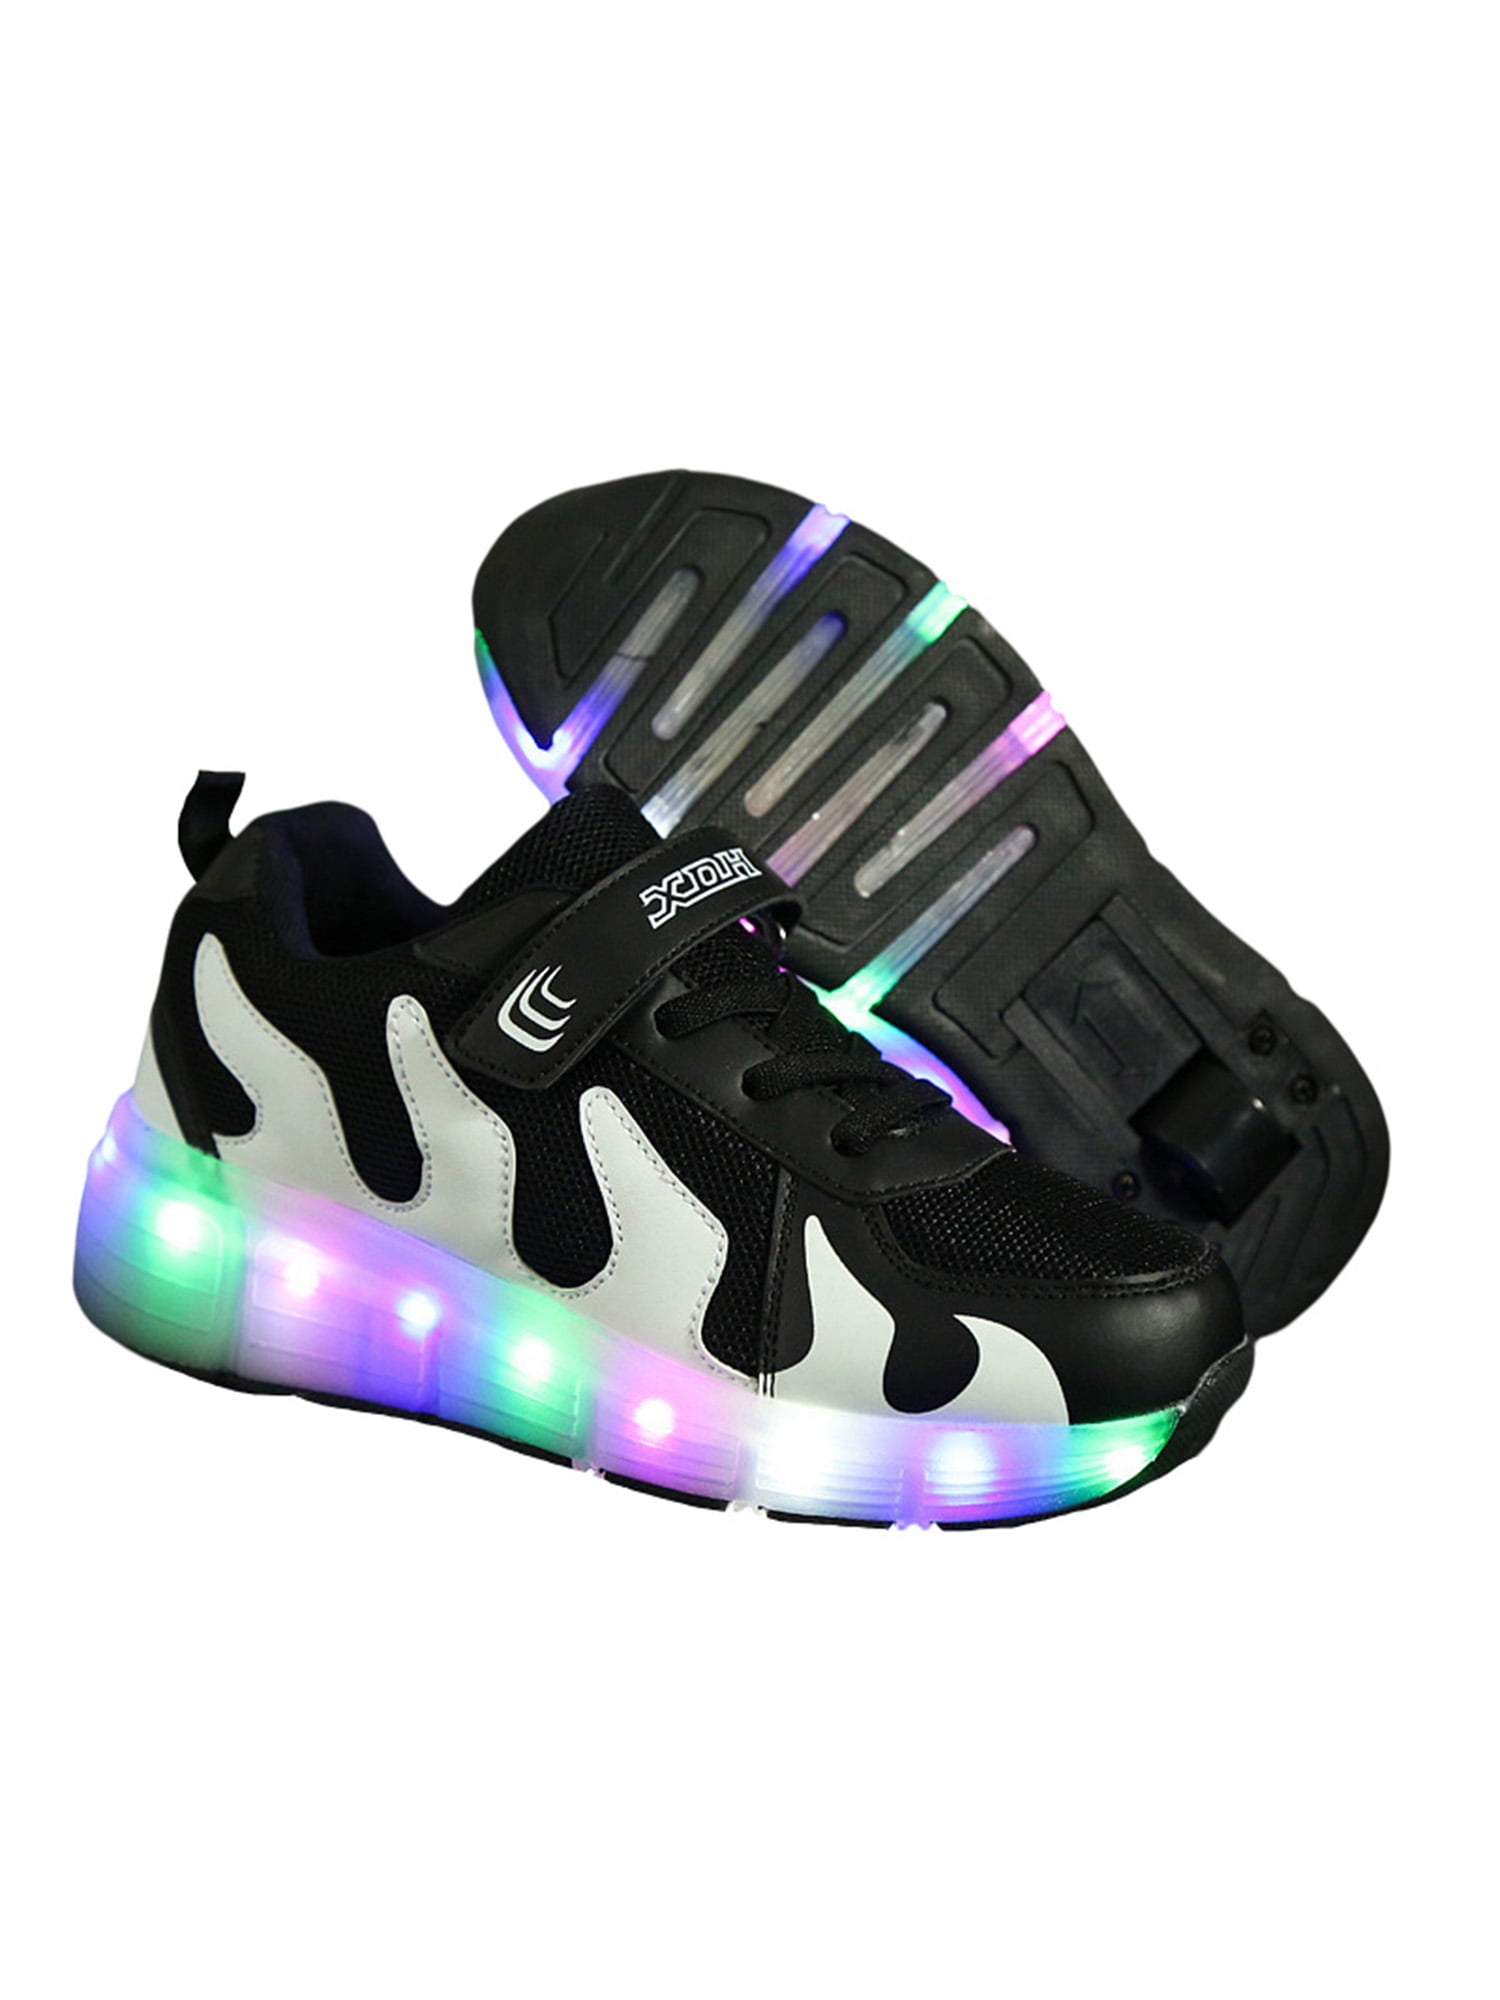 Wheels shoes mesh single wheel waterproof 7 colorful LED 